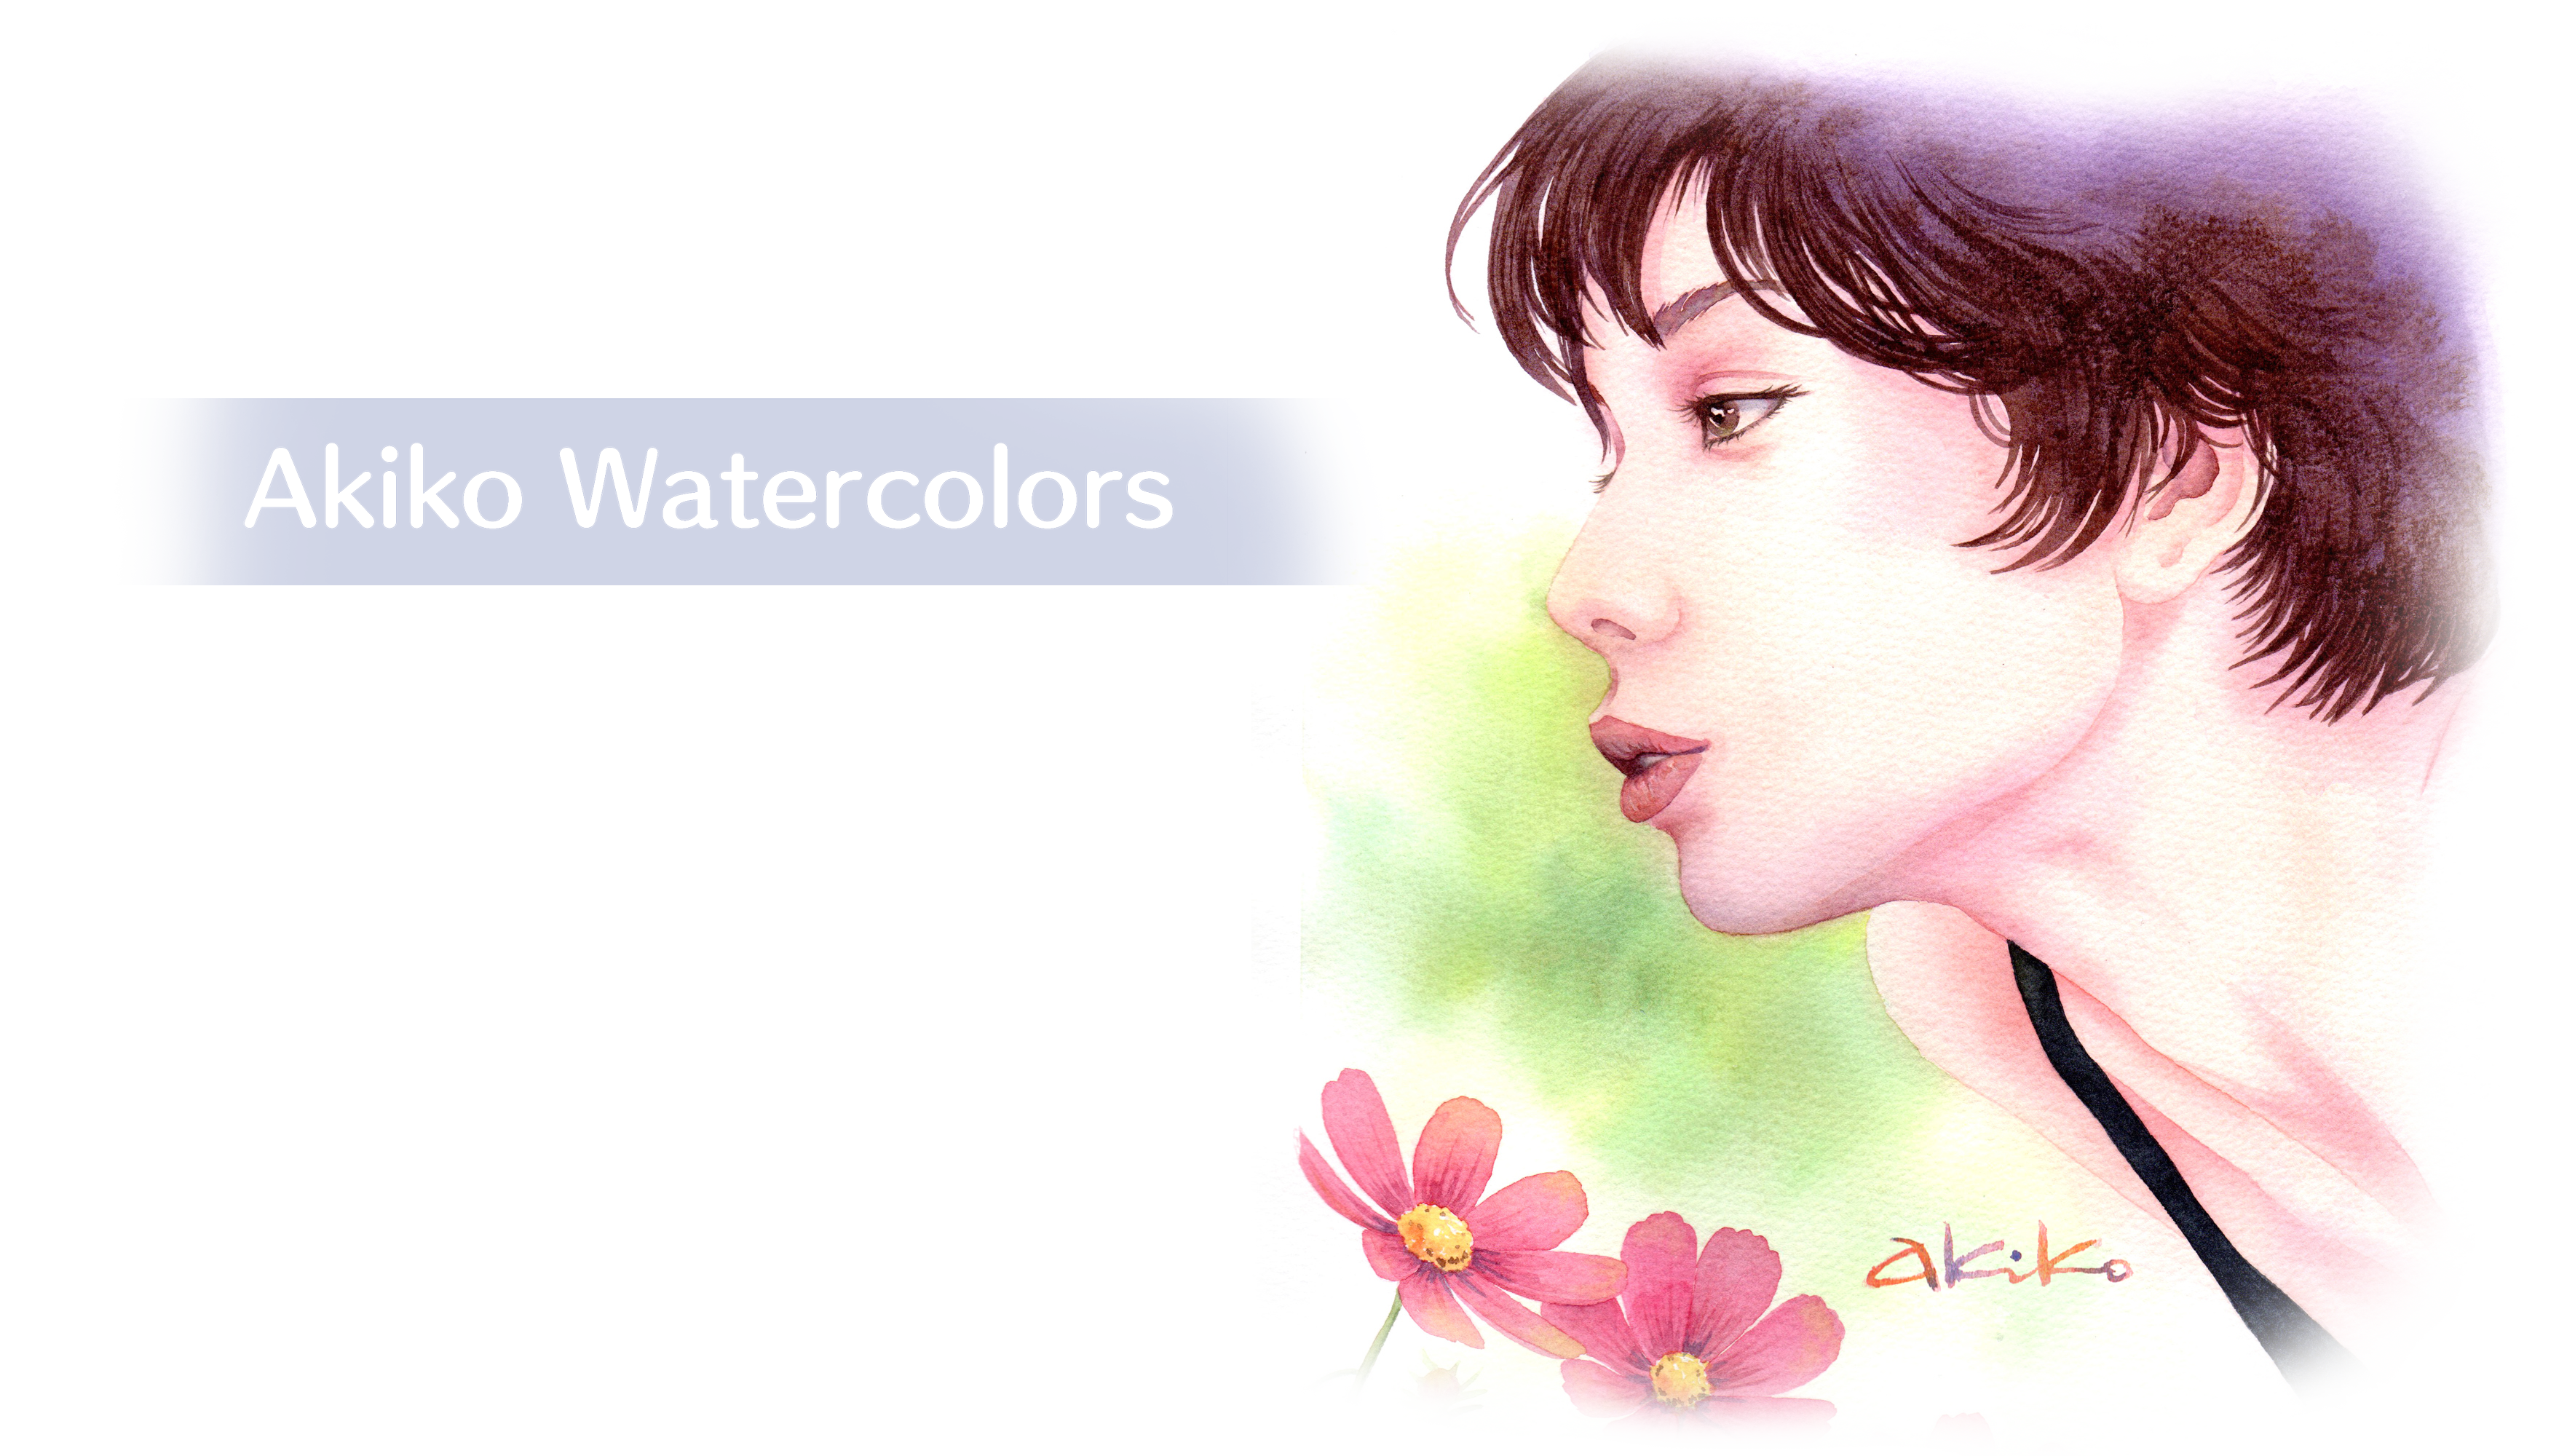 Akiko Watercolors